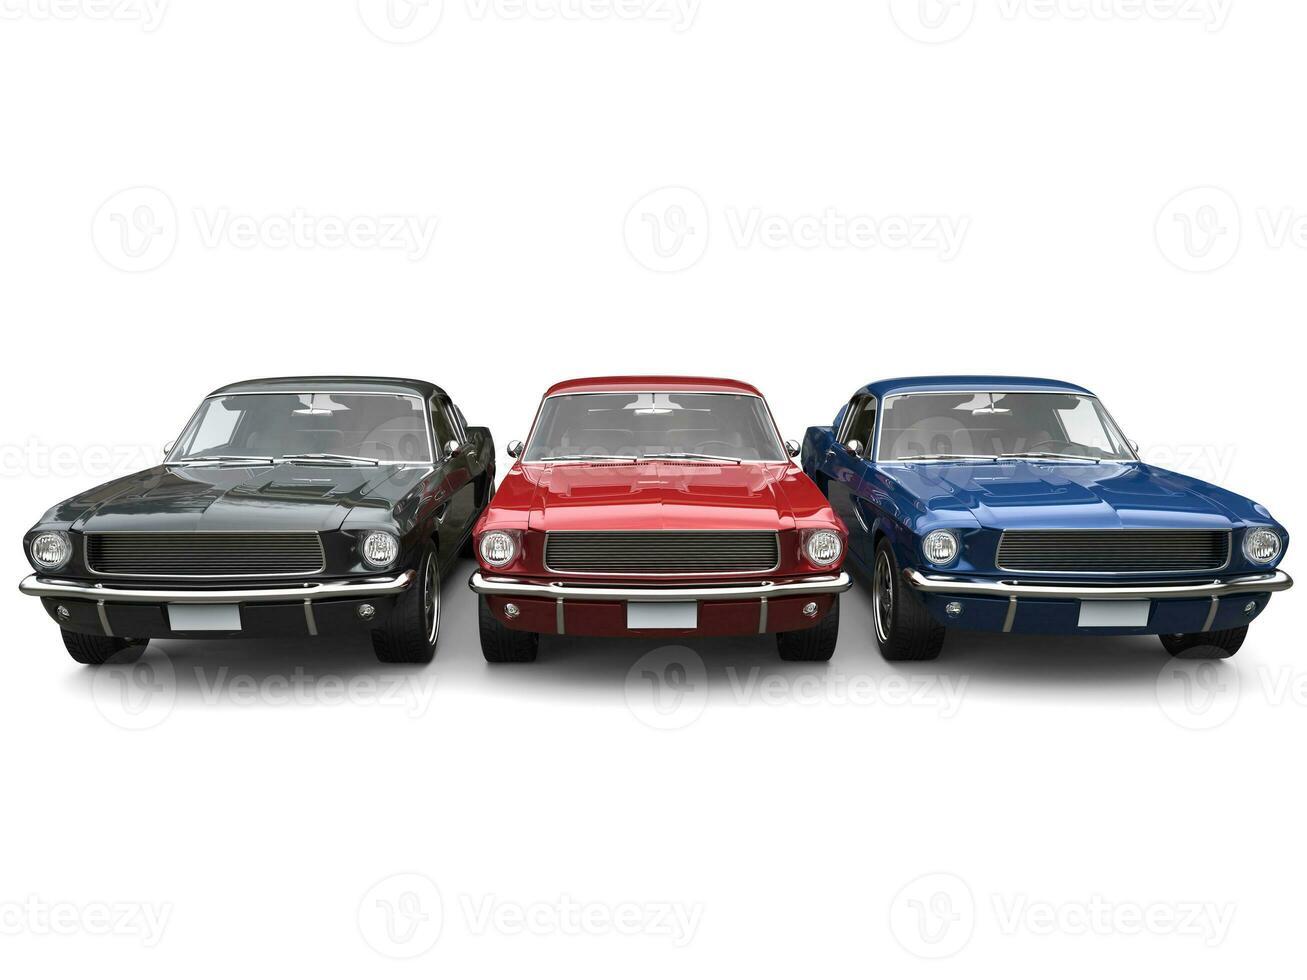 schön restauriert Jahrgang amerikanisch Muskel Autos - - Blau, rot und schwarz foto